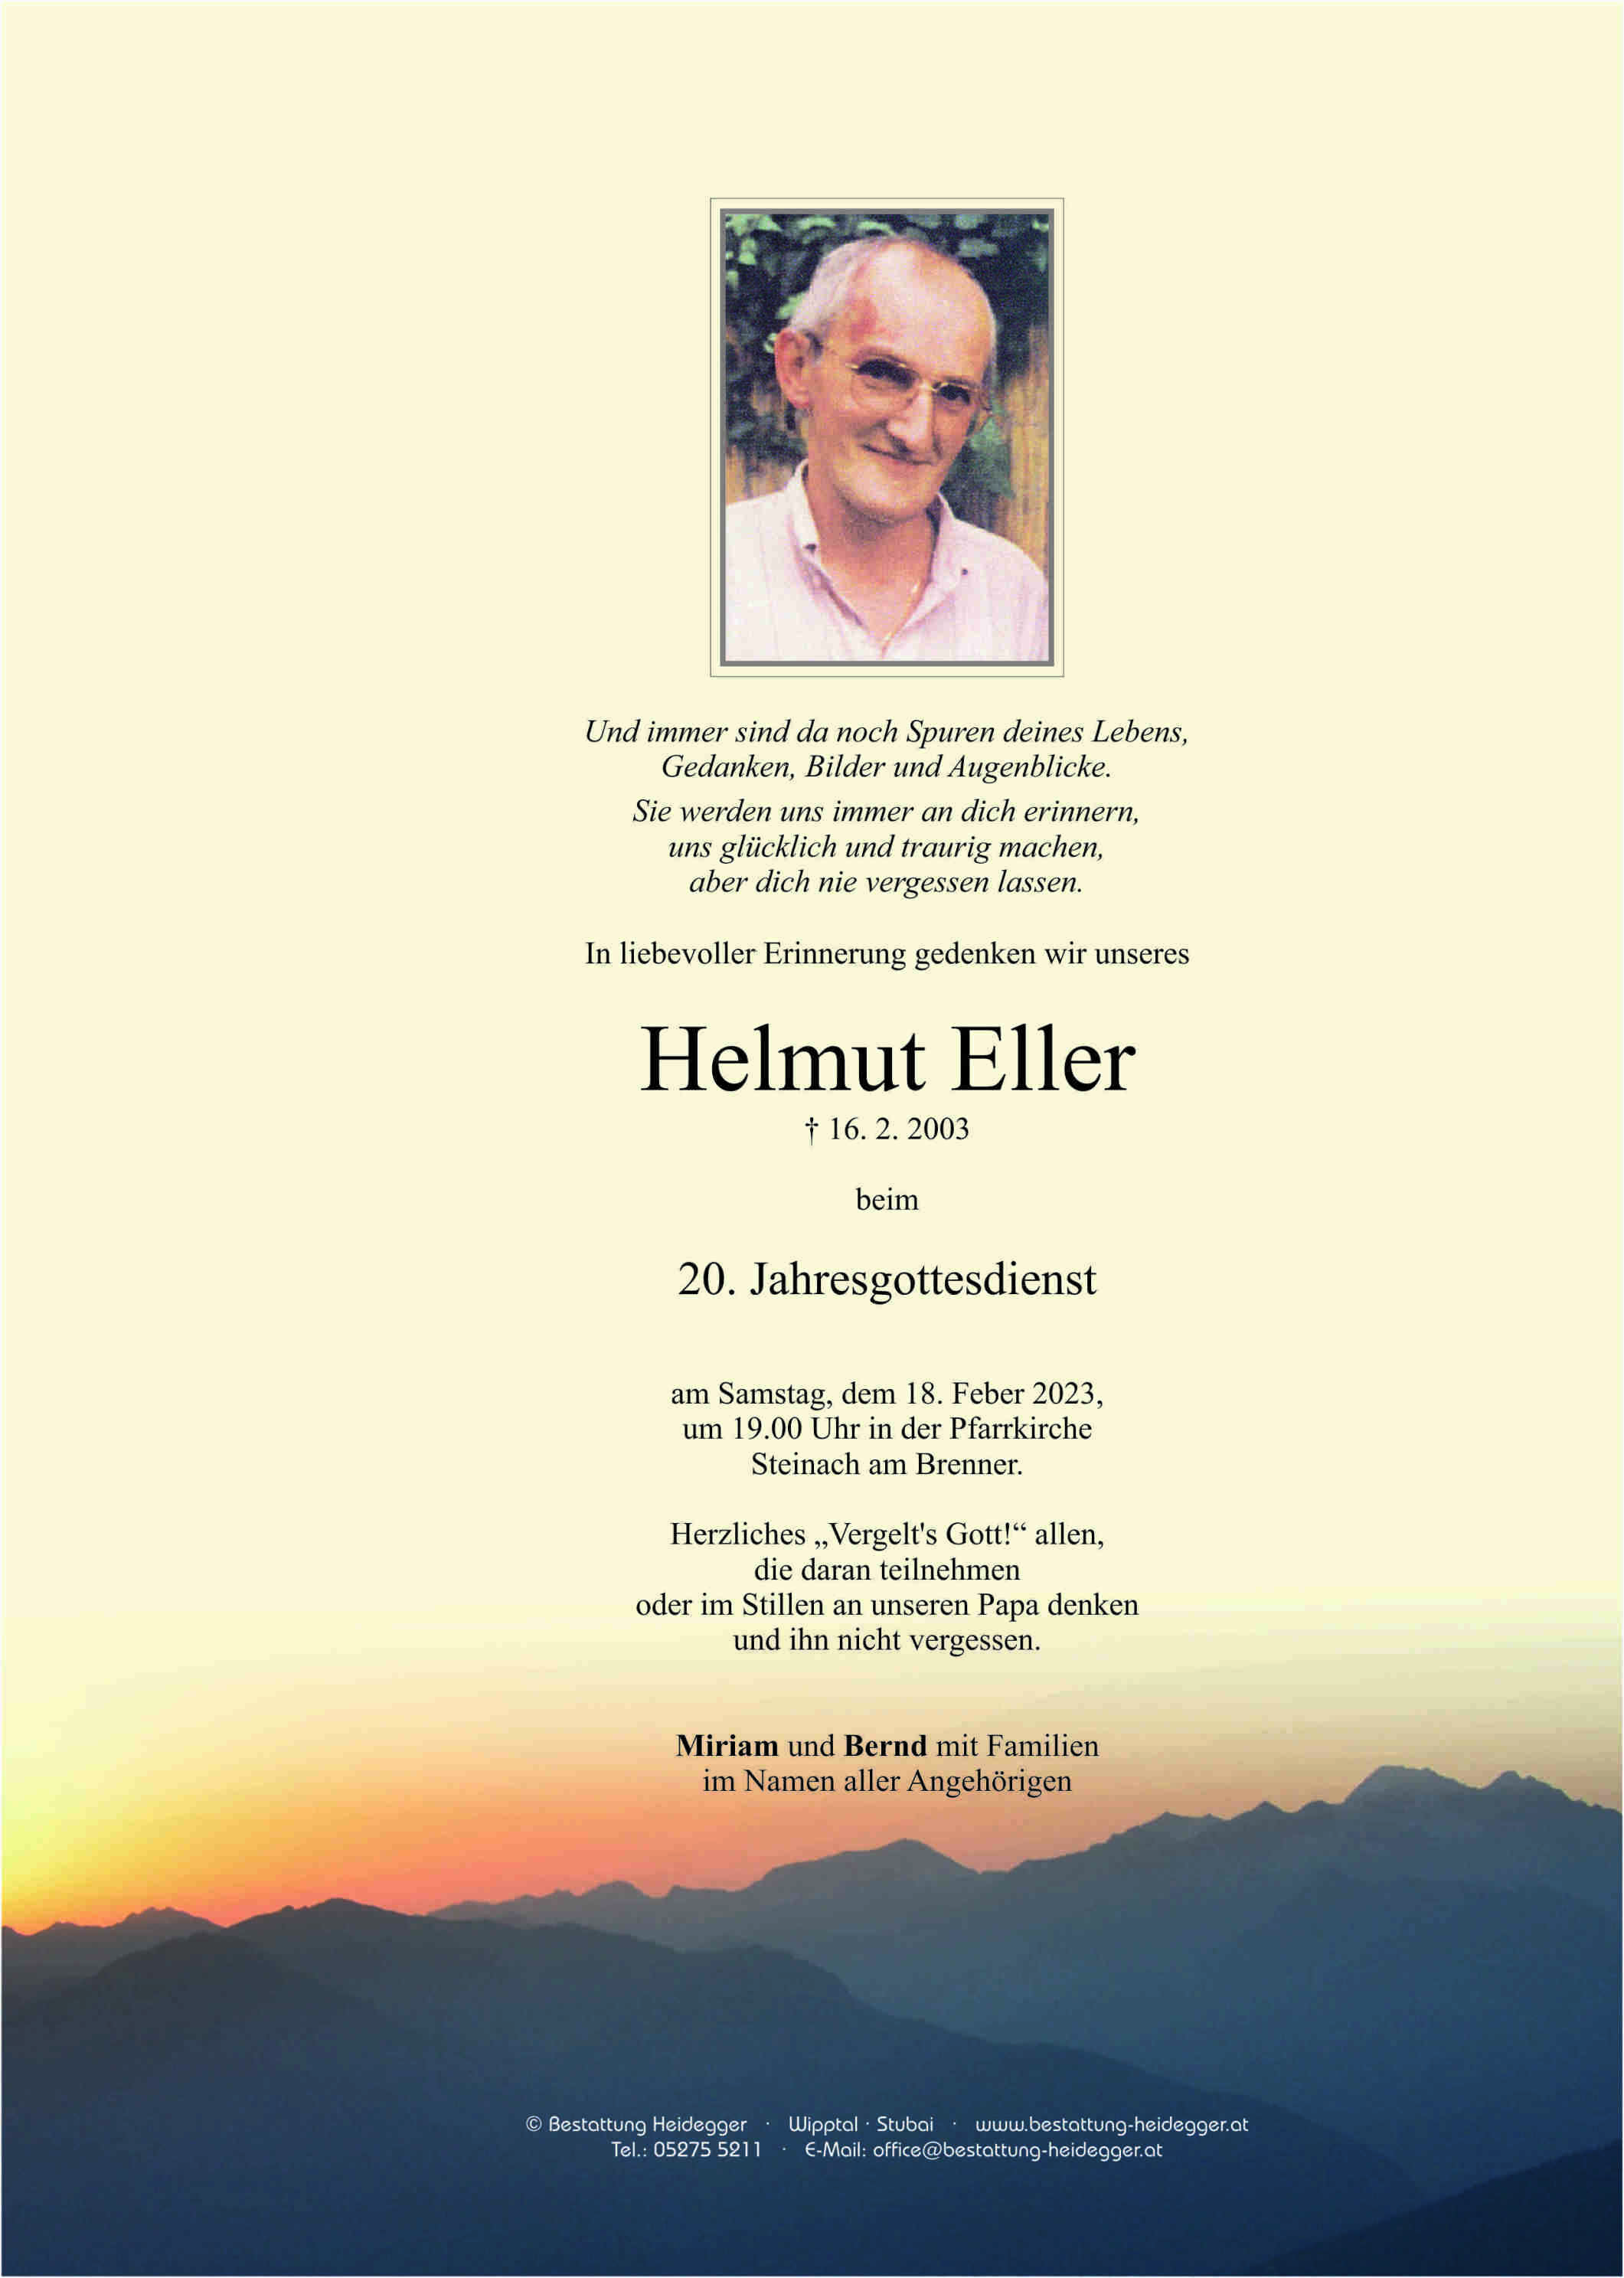 Helmut Eller